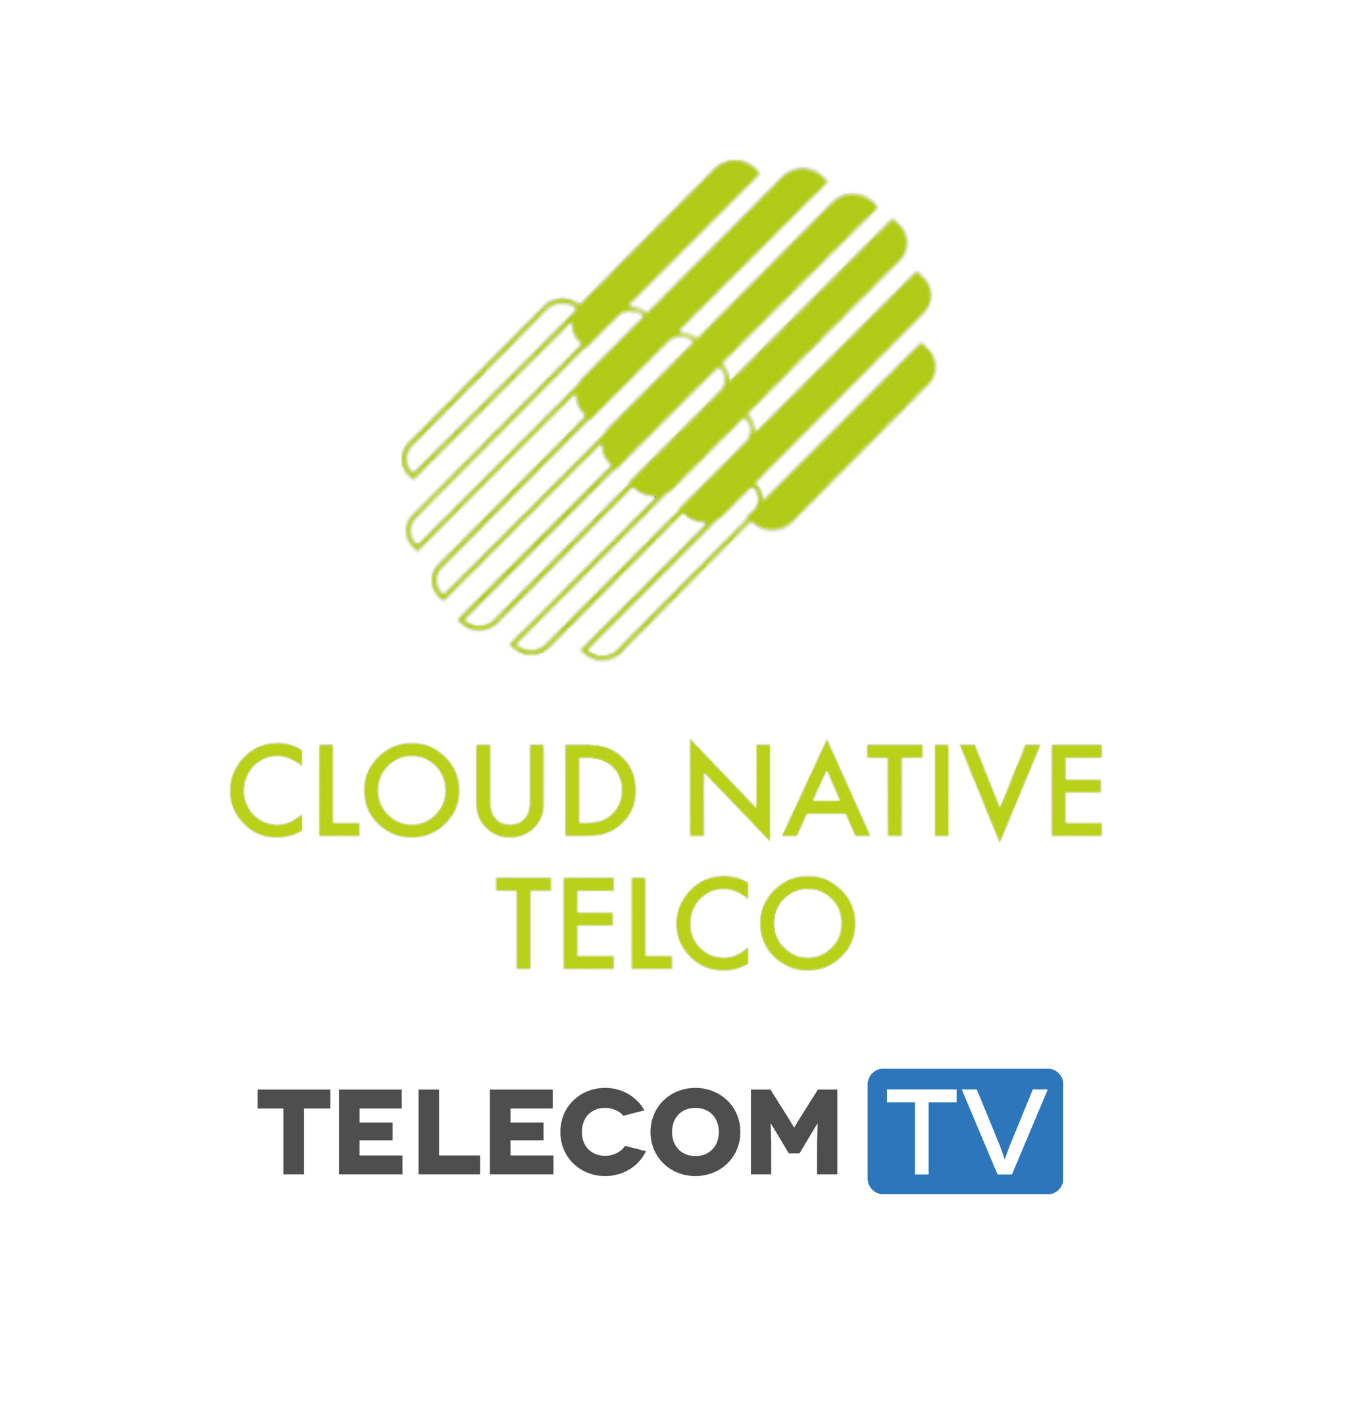 telecom-tv-cloud-native-teleco-event-logo-2